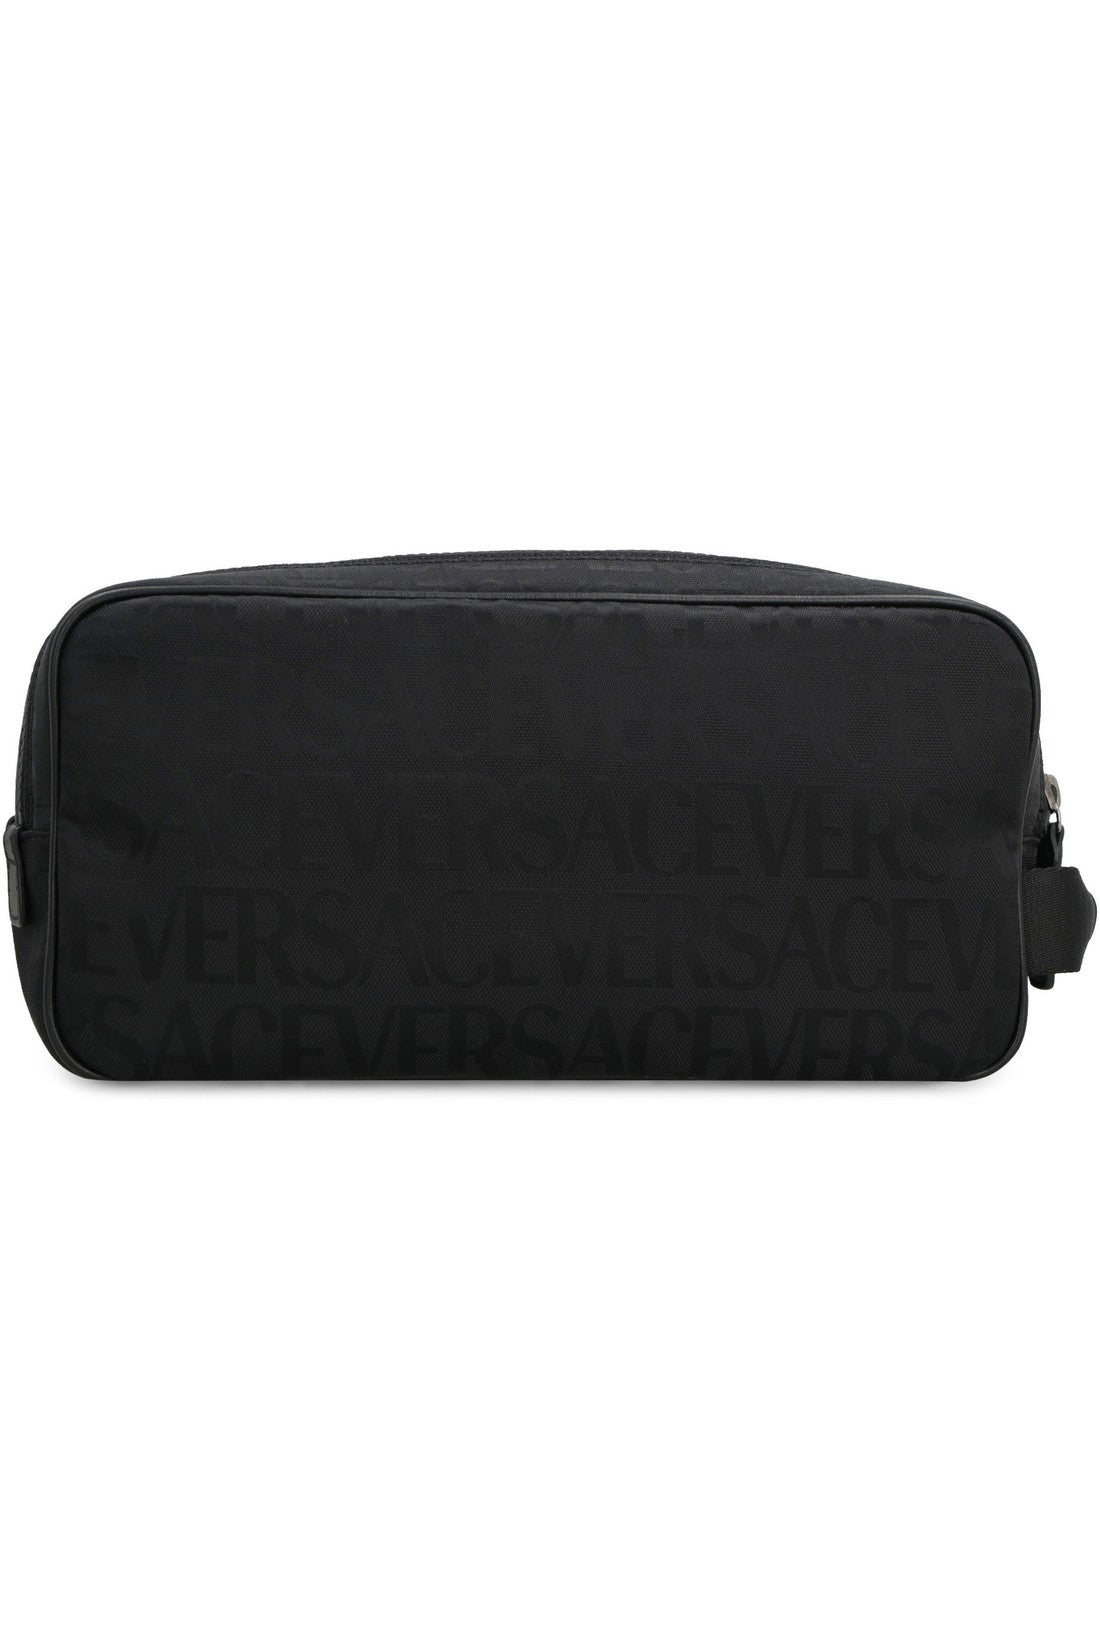 Versace-OUTLET-SALE-Nylon wash bag-ARCHIVIST